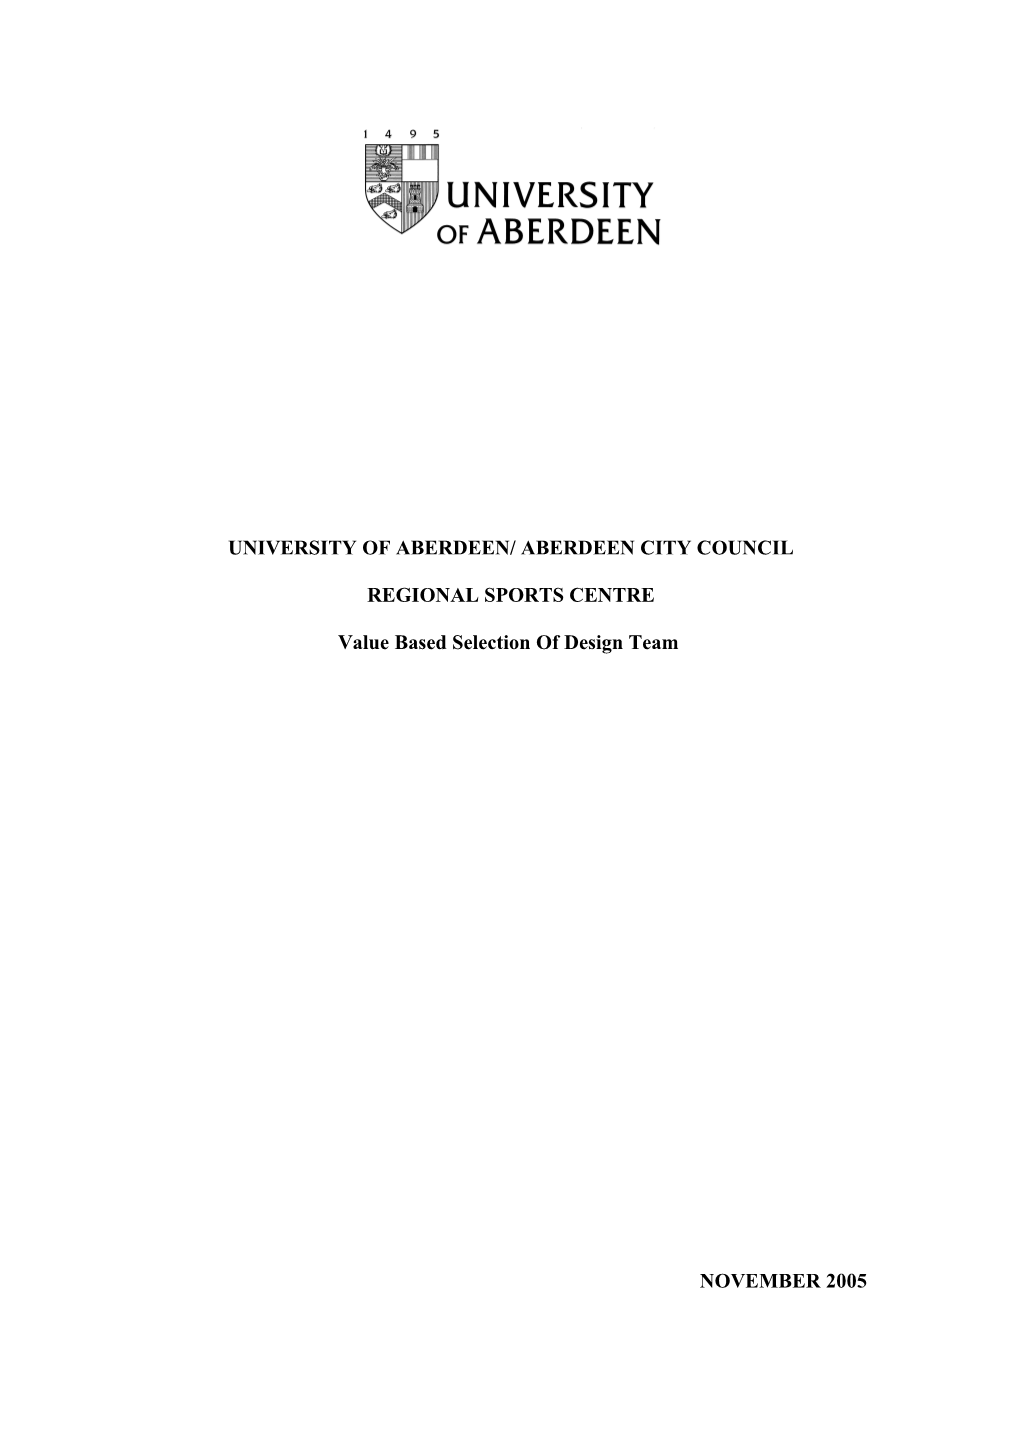 University of Aberdeen/ Aberdeen City Council